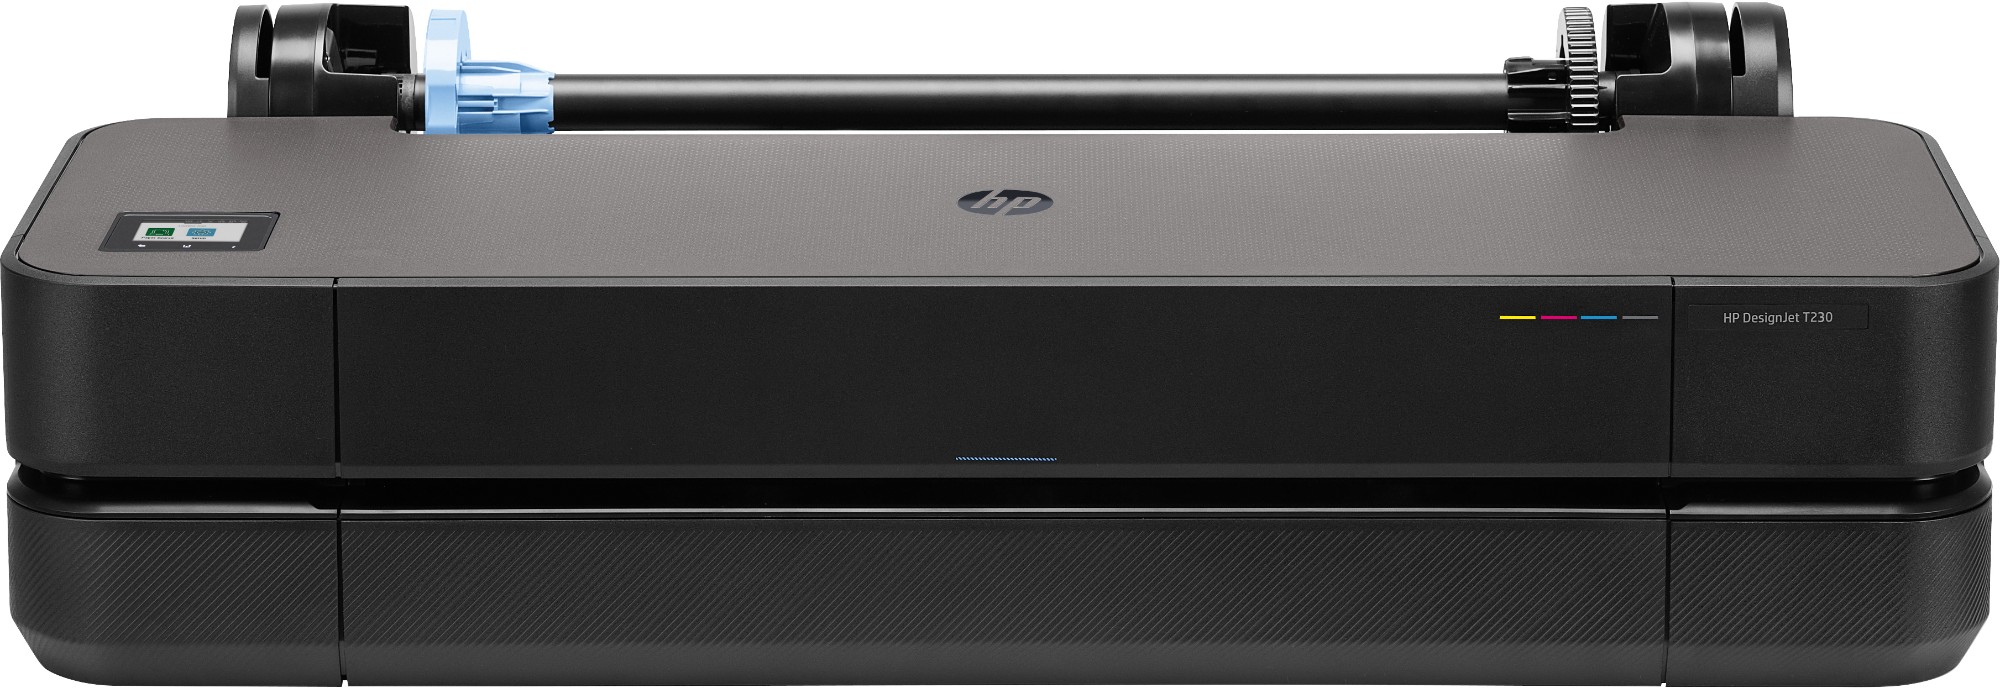 HP Designjet T230 large format printer Wi-Fi Thermal inkjet Colour 2400 x 1200 DPI A1 (594 x 841 mm) Ethernet LAN - 5HB07A#B19